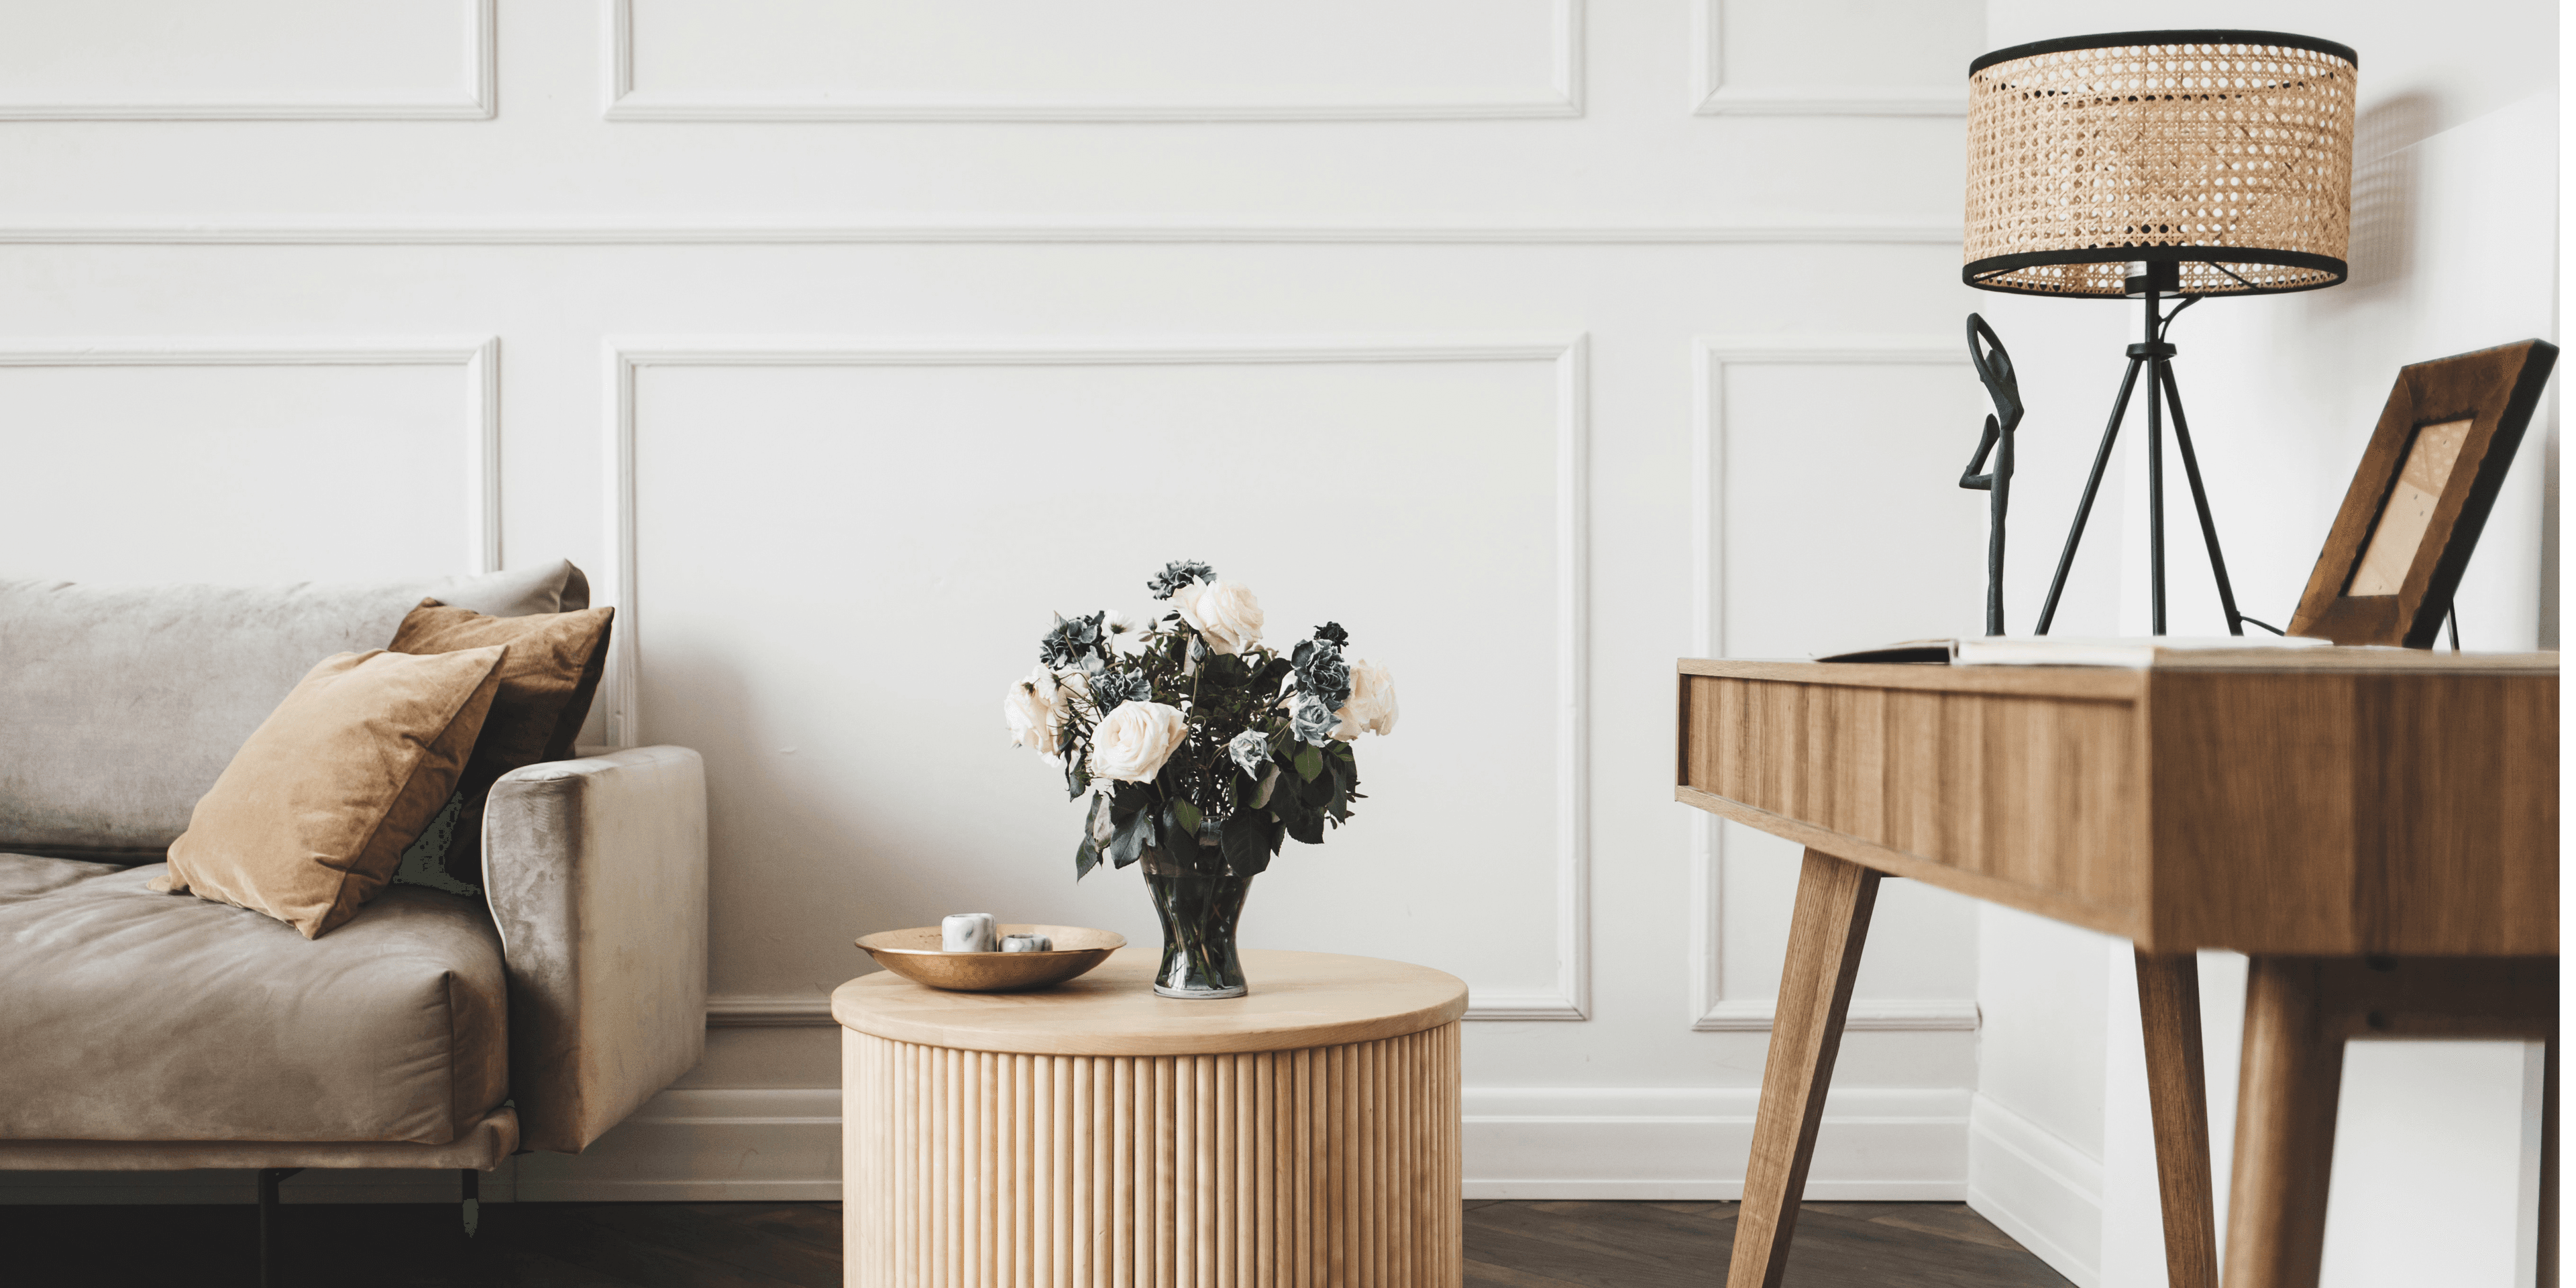 Olohuoneen nurkkaus, jossa on sohva, puinen sohvapöytä sekä sivupöytä. Huone on vaalea ja sisustuksessa on käytetty erisävyisiä puisia elementtejä. Sohvapöydällä on kukkakimppu.